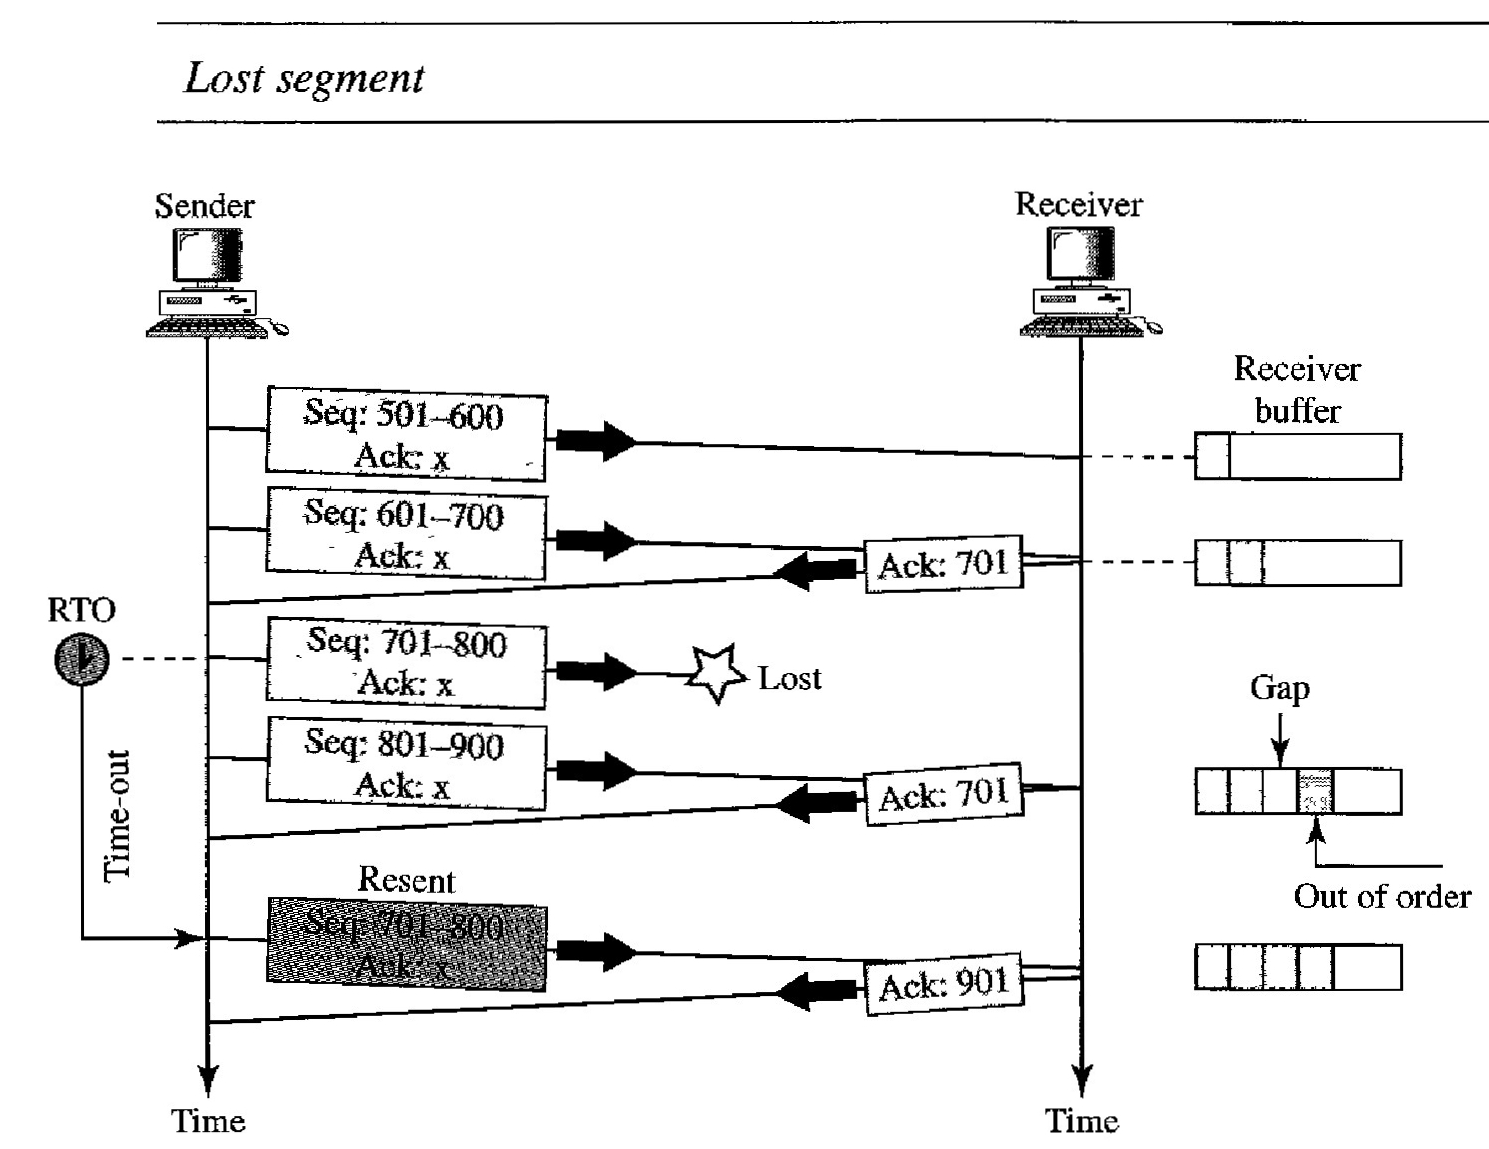 Scenarios during TCP transmission - Lost Segment